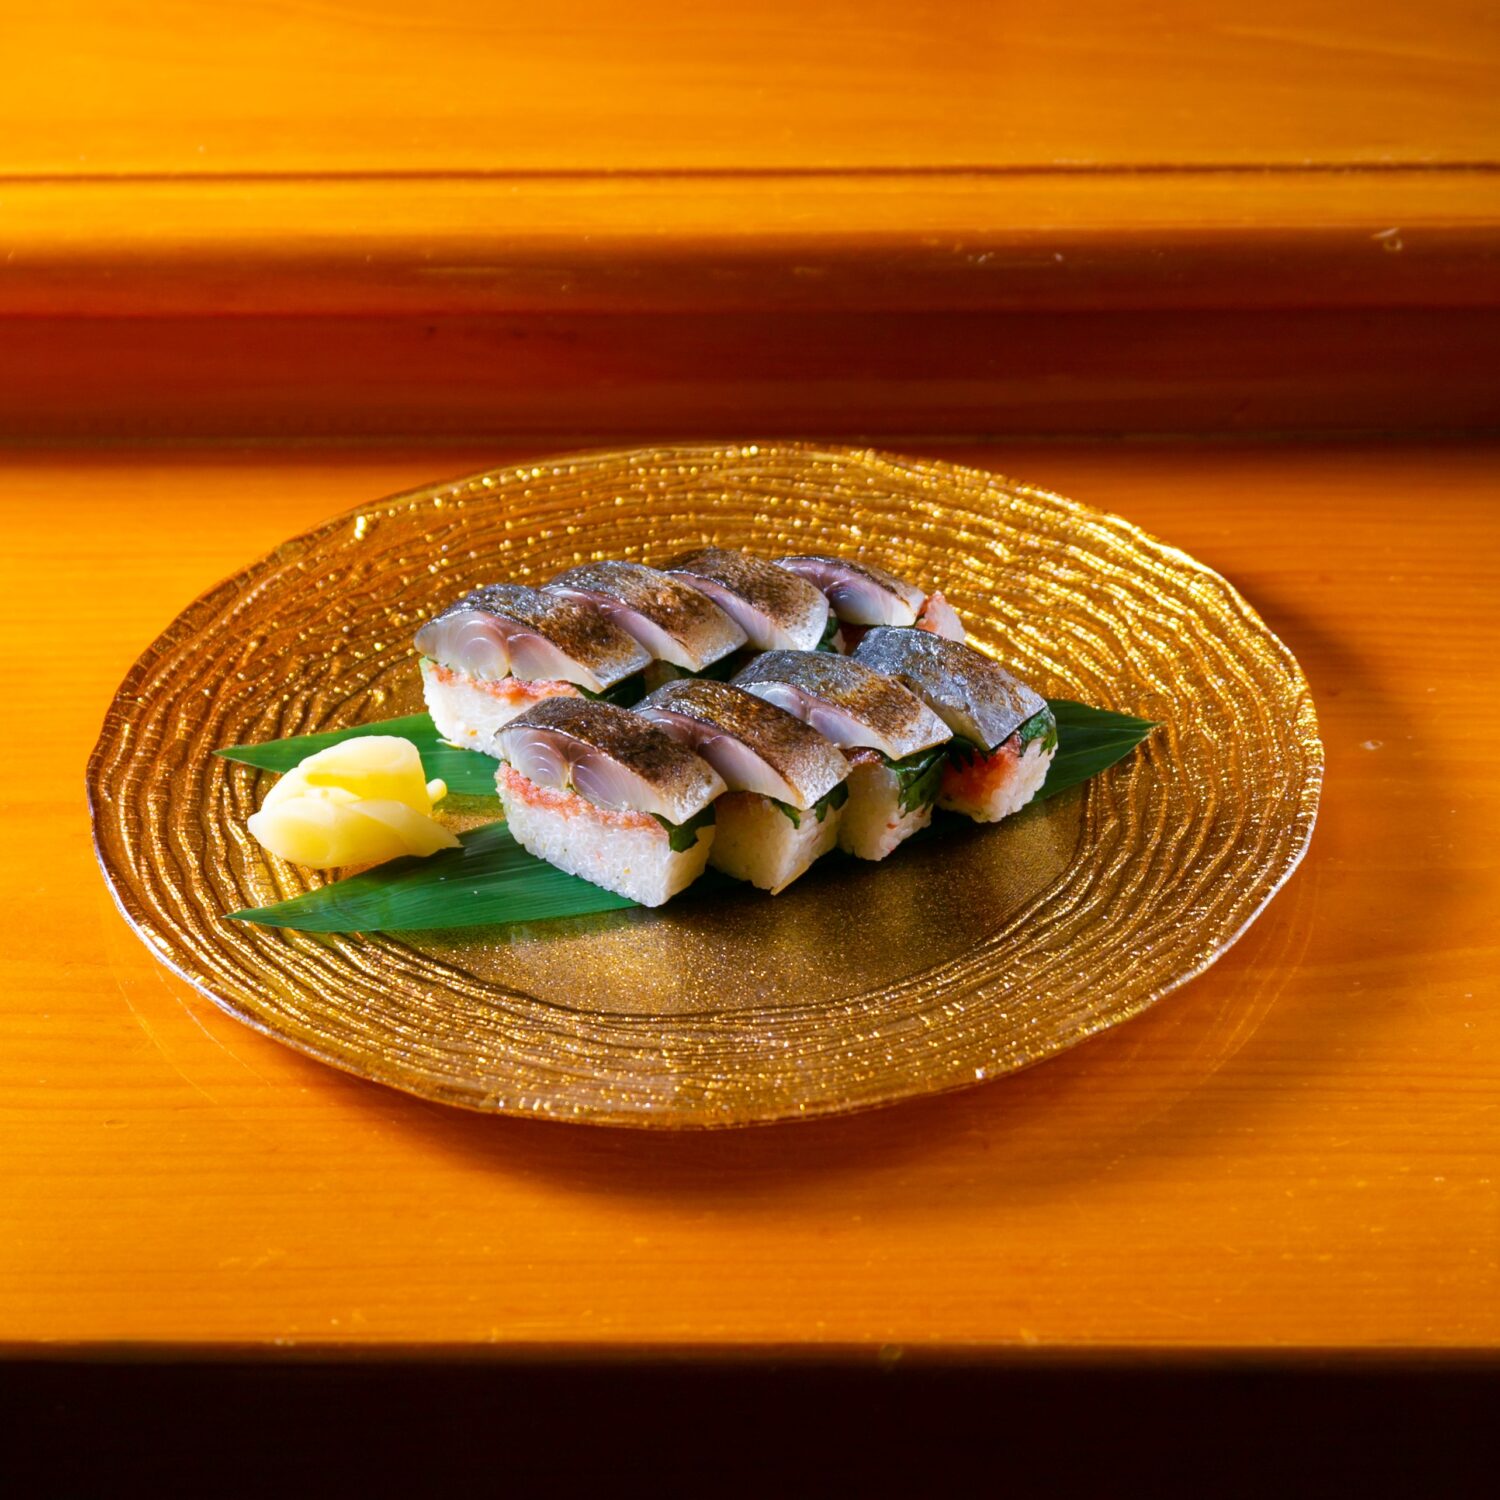 ふくおか地魚バトルⅡ脂ののった美味しいサバと明太子で博多らしさを演出「寿司 銀明翠 博多」  ふくおかナビ